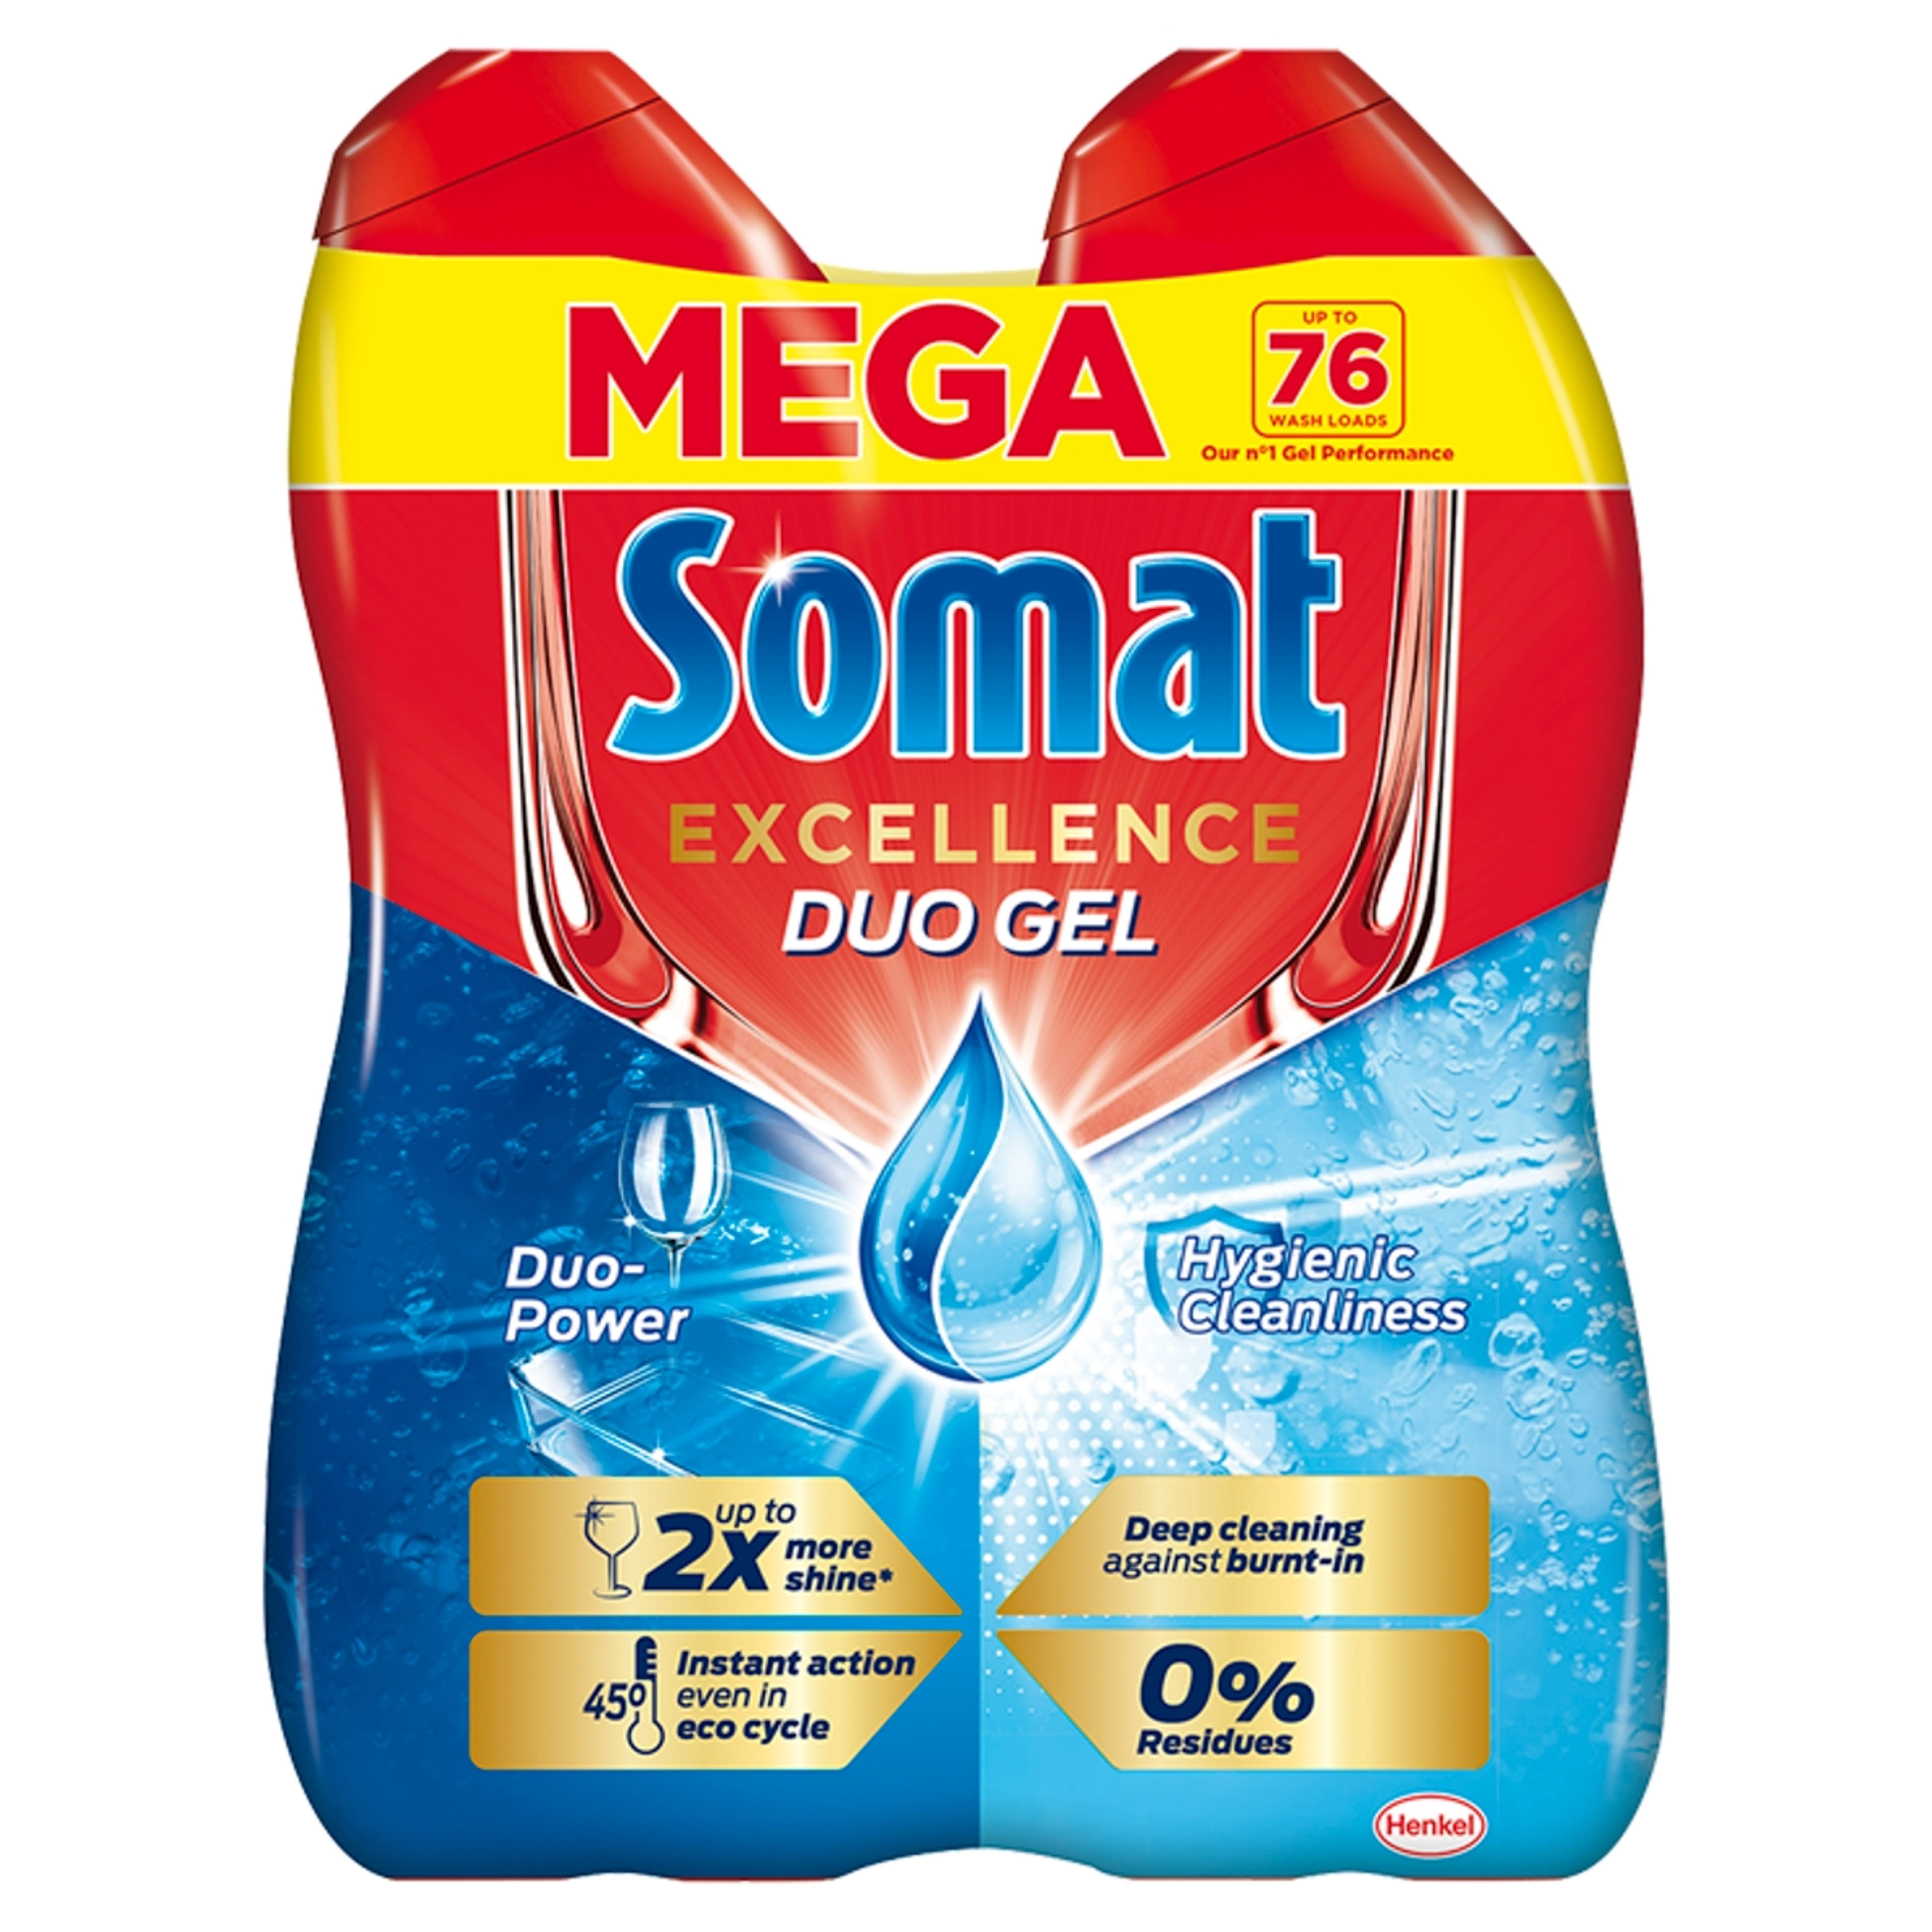 Somat Excellence Hygiene mosogatógép gél, 76 mosogatás (2 x 684 ml) - 2 db